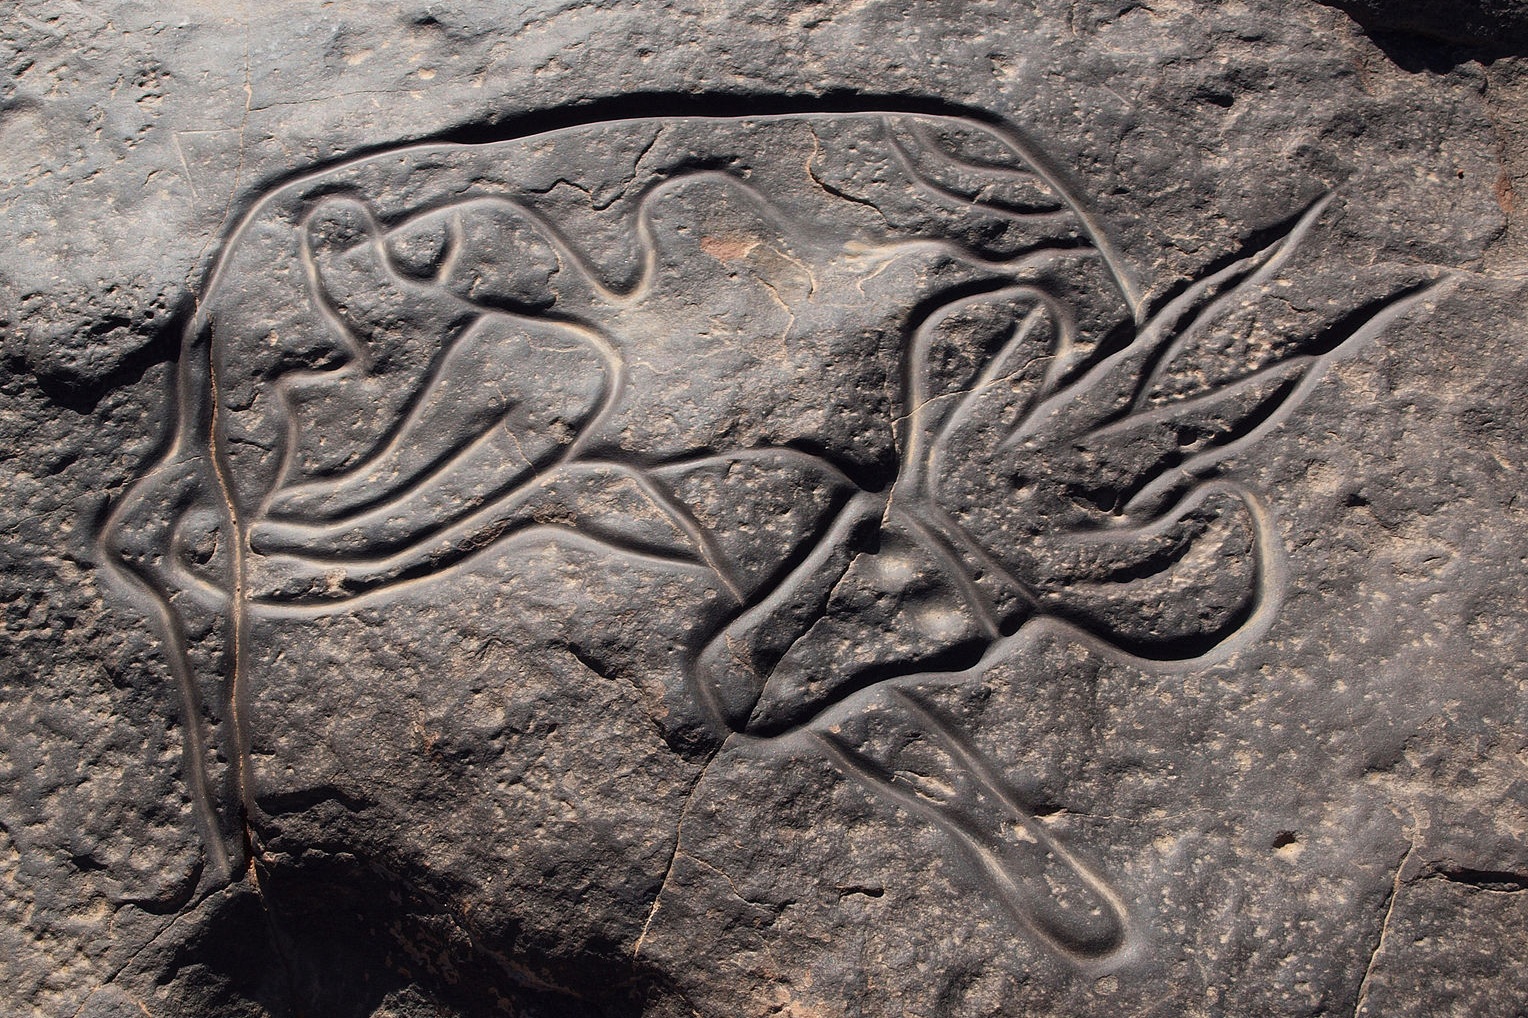 Rock art in Tassili n'Ajjer